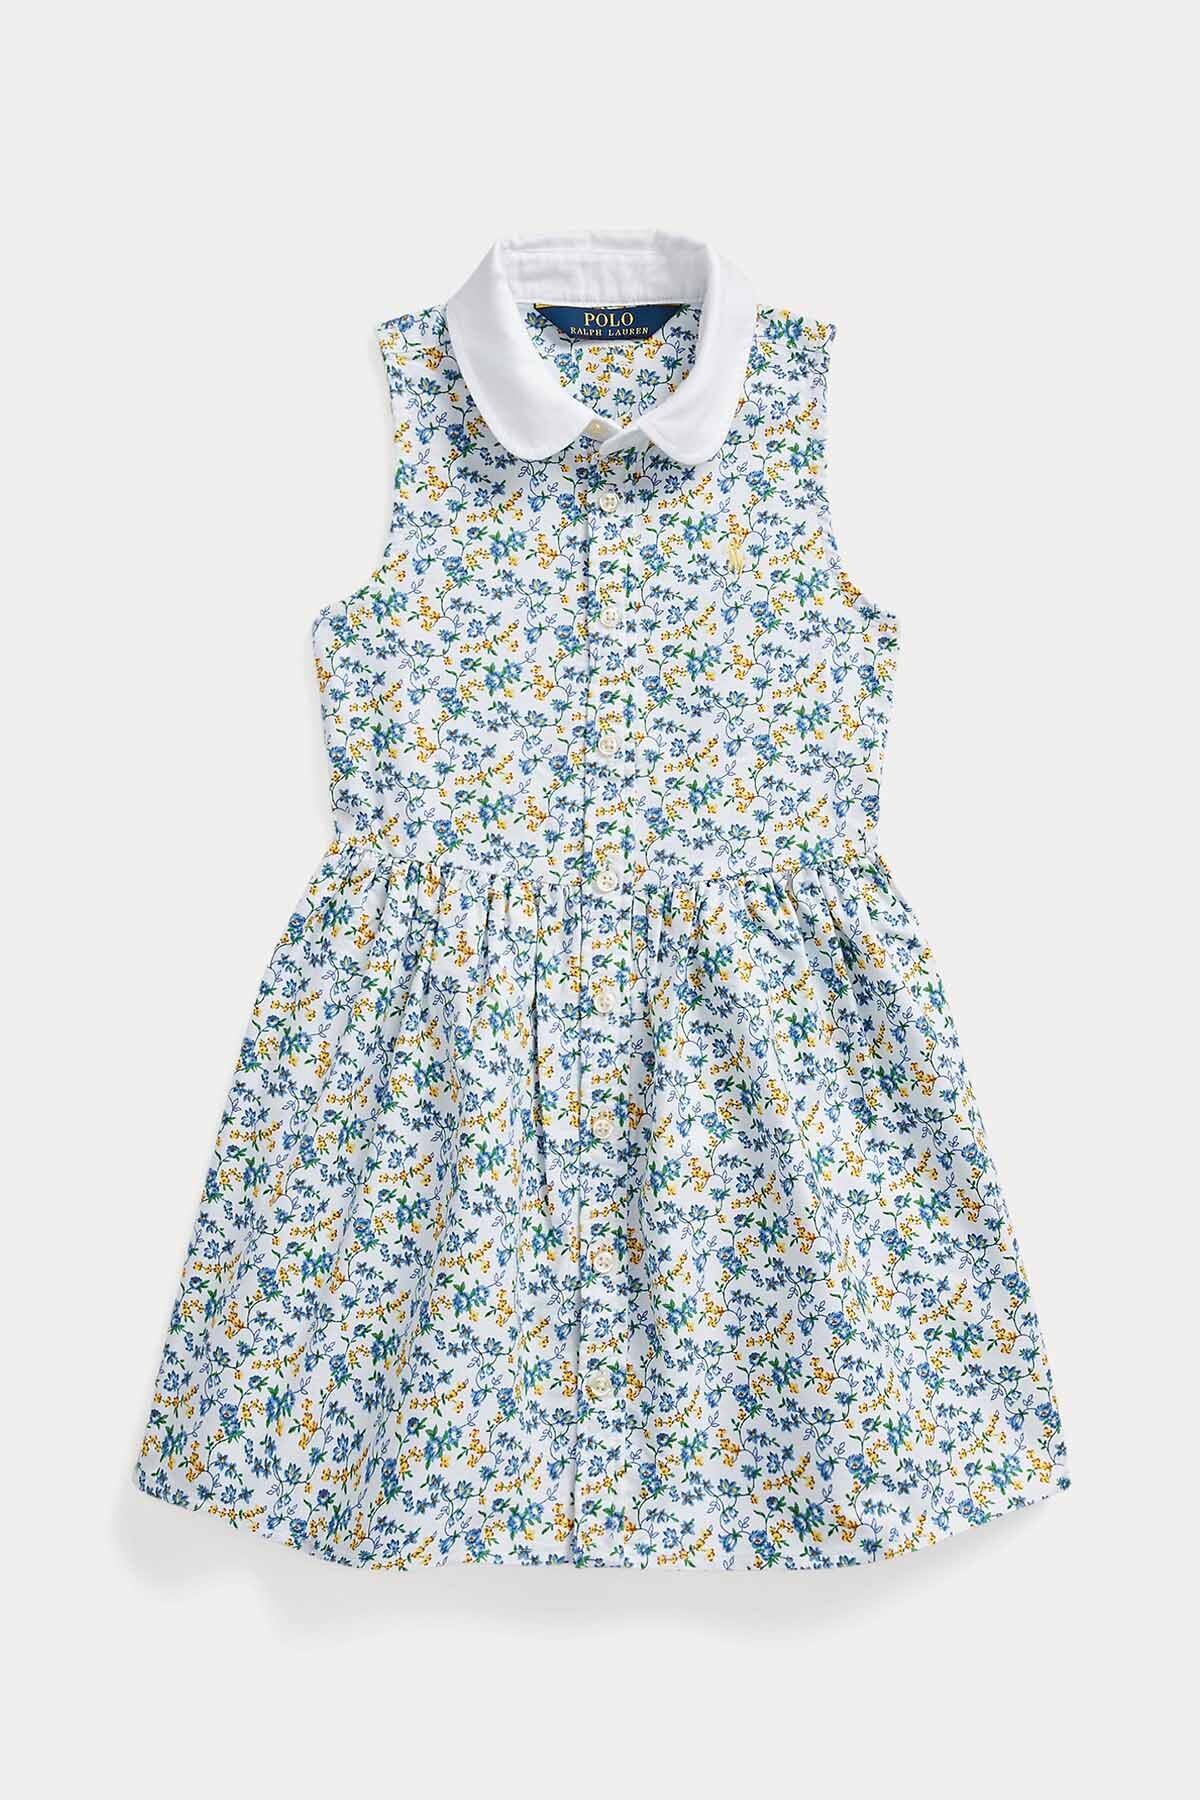 Ralph Lauren 2-4 Yaş Kız Çocuk Çiçek Desenli Gömlek Elbise 3y / Çok Renkli